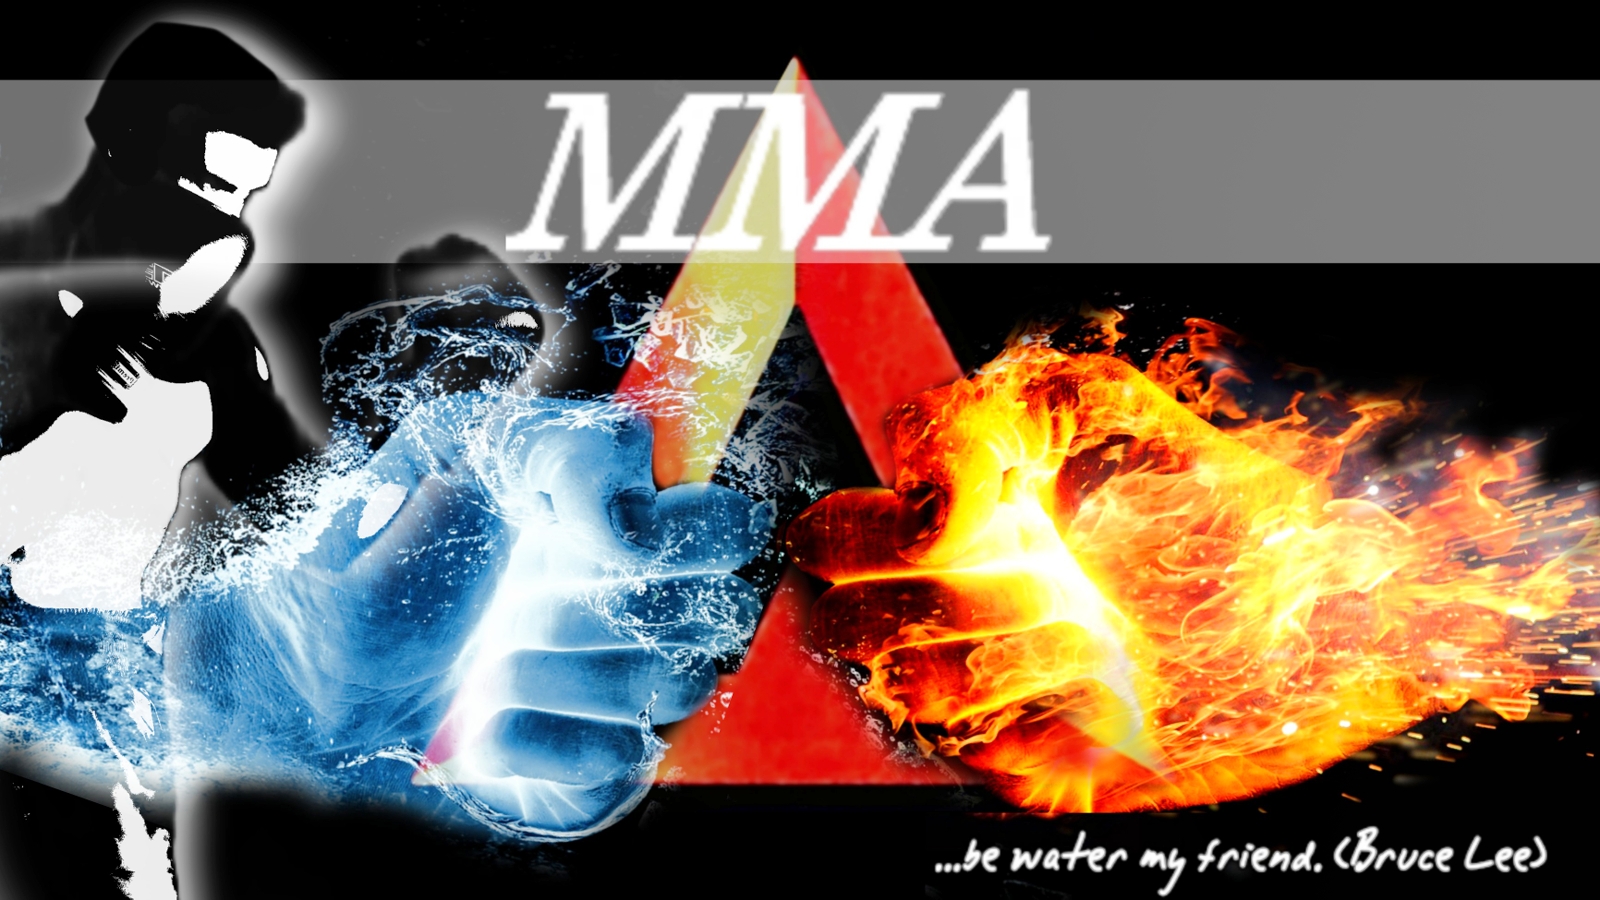 Mixed Martial Arts (MMA)